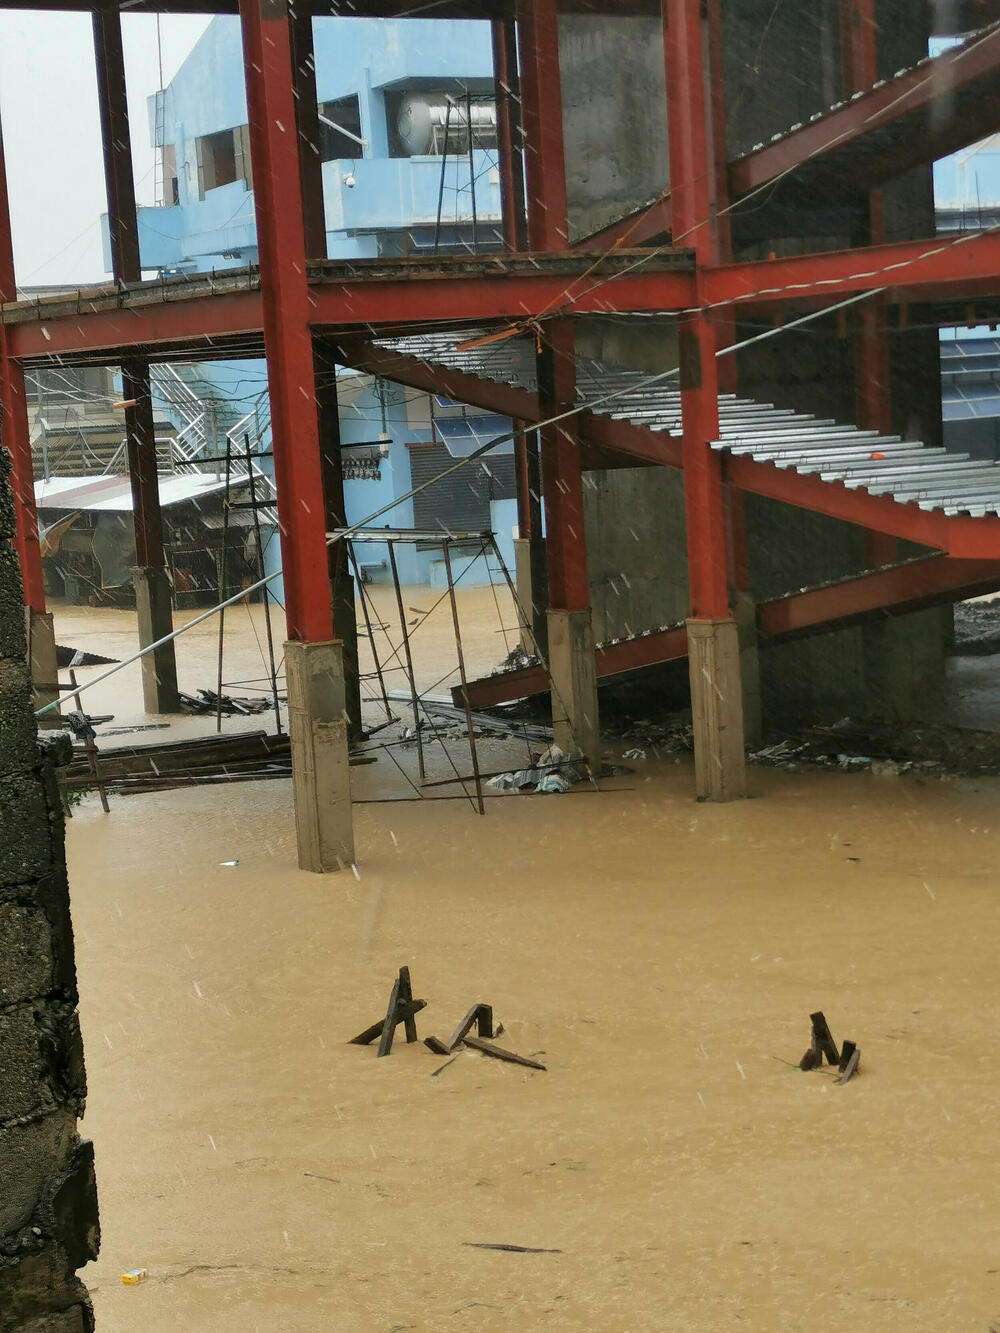 <p>Oluja nazvana Nalgae izazvala je najviše nevolja u provinciji Maguindanao na ostrvu Mindanao zbog velikih poplava oko grada Kotabatoa</p>